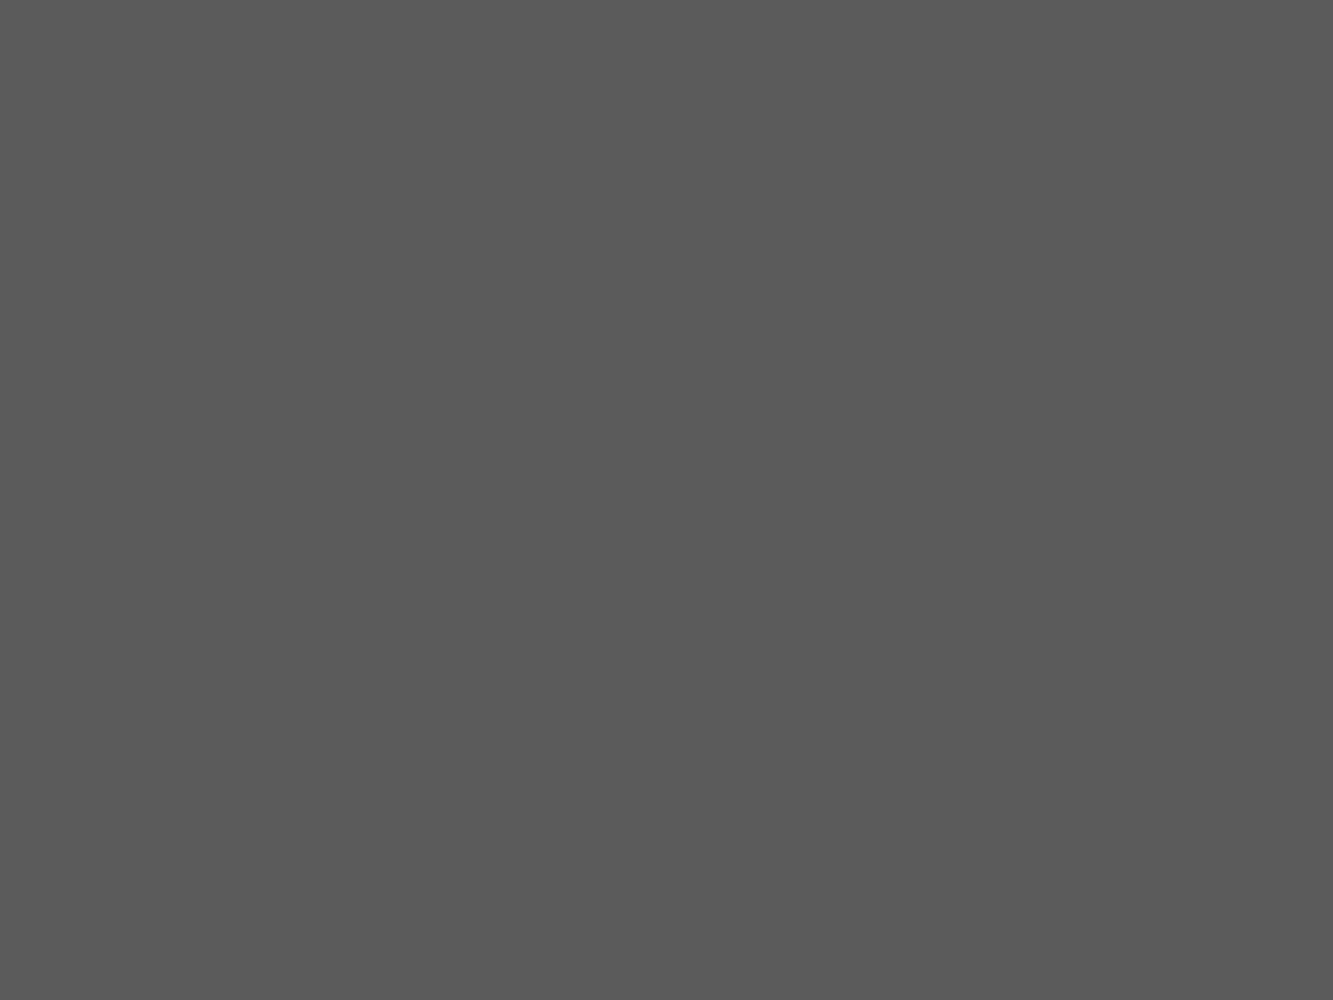 Константин Маковский. Ромео и Джульетта (позирует супруга художника, Мария Маковская) (фрагмент). 1890-е. Частное собрание